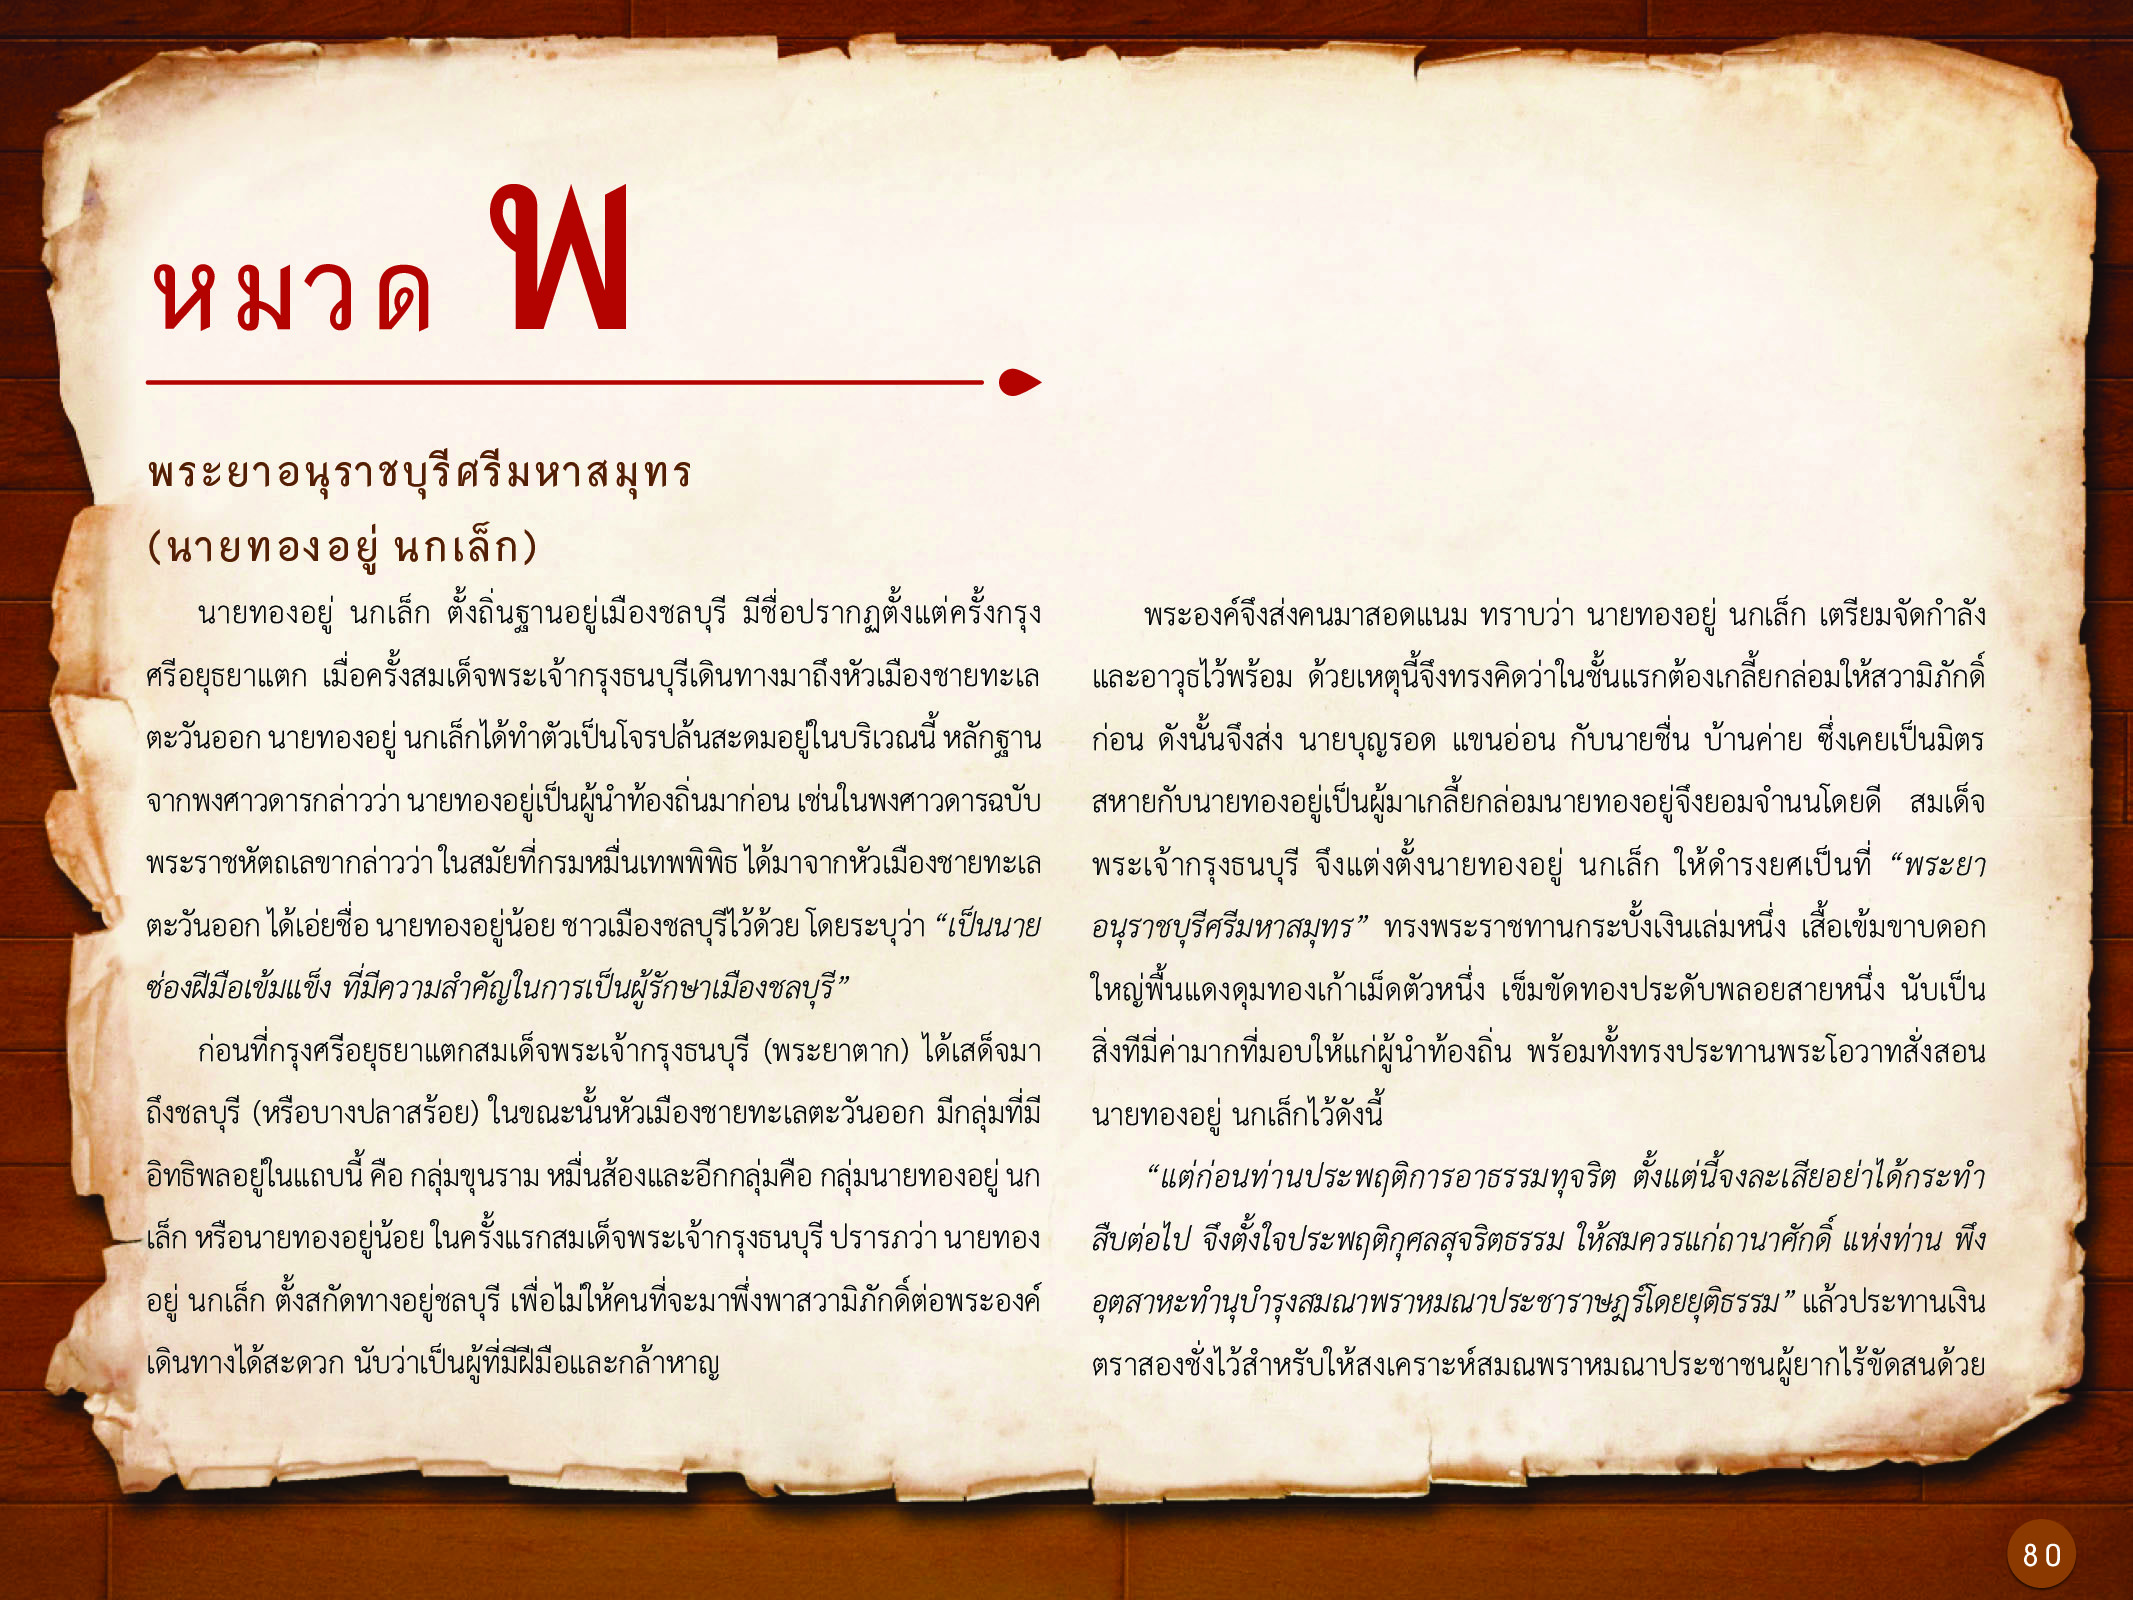 ประวัติศาสตร์กรุงธนบุรี ./images/history_dhonburi/80.jpg